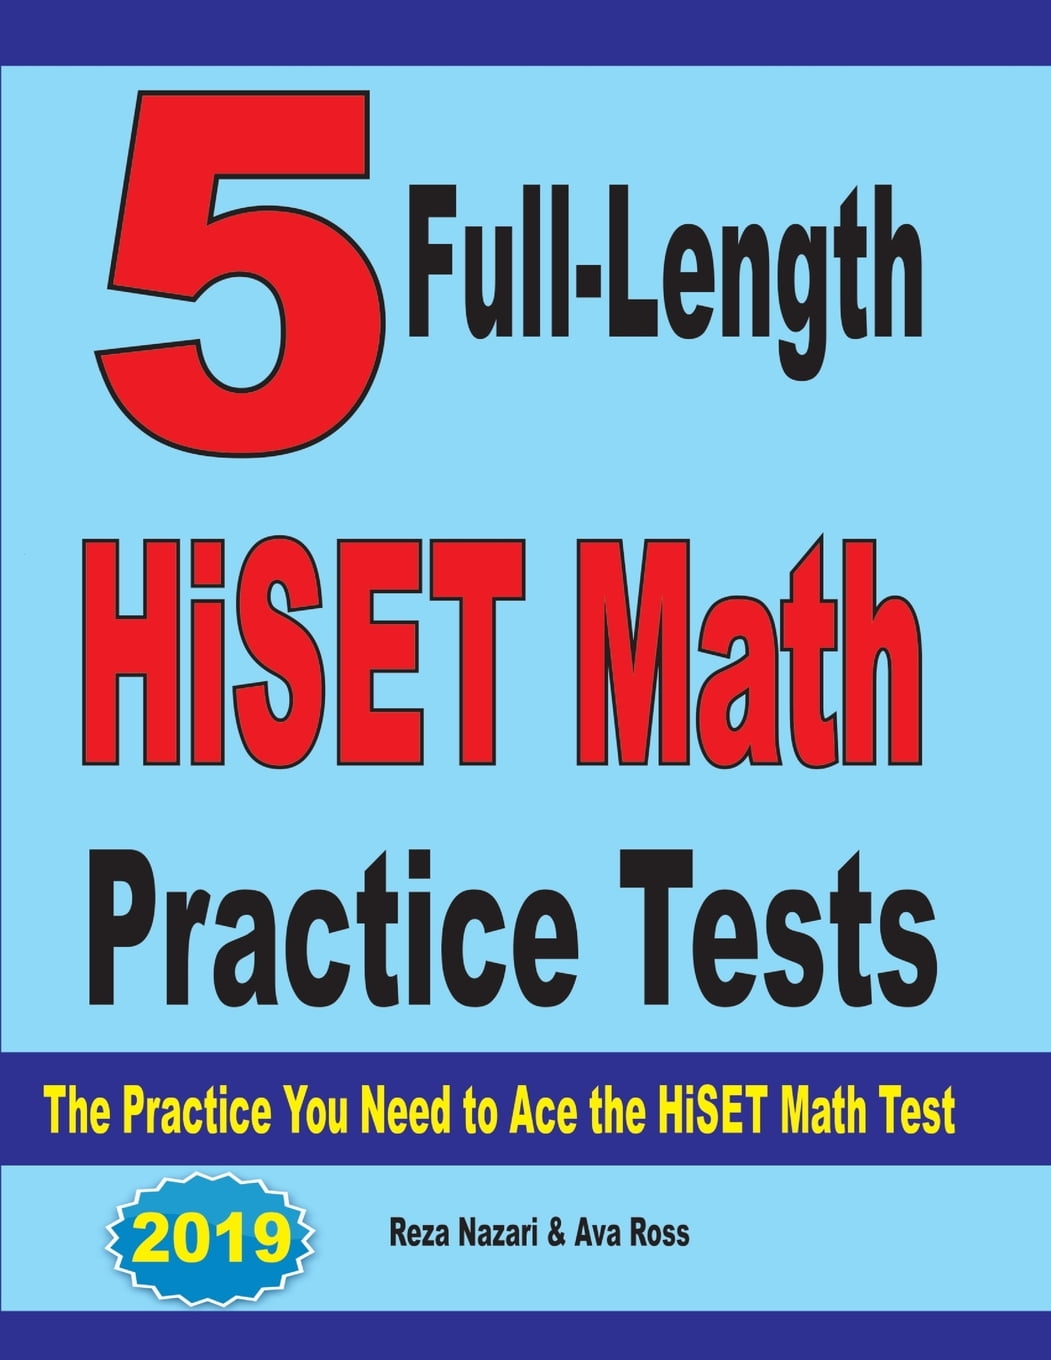 Hiset Practice Test Printable